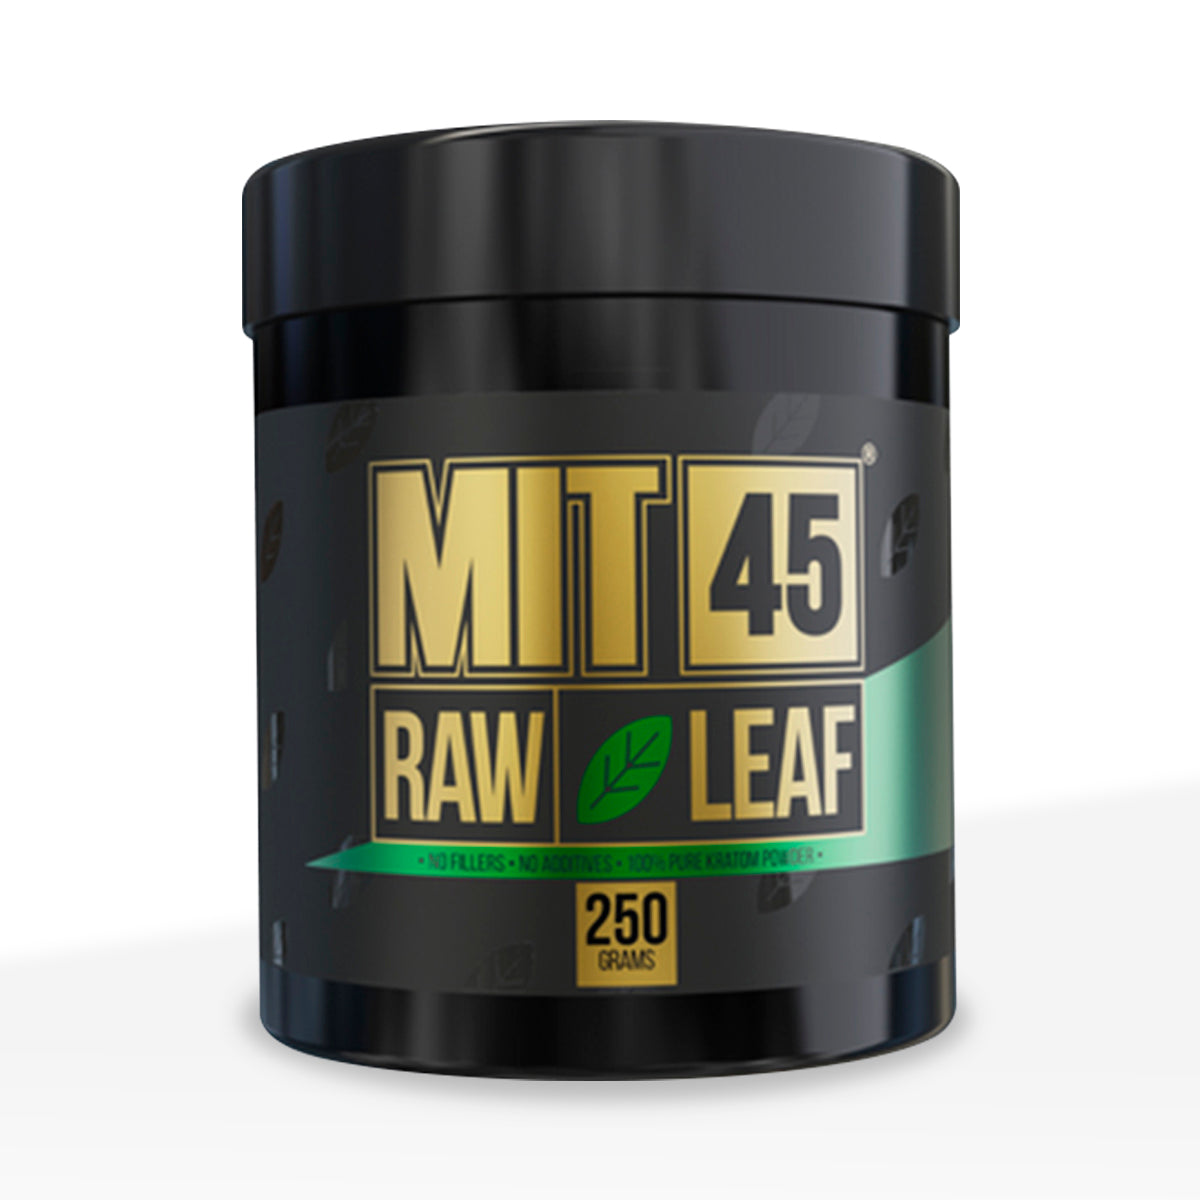 MIT45 Green Vein Kratom Powder 10mg